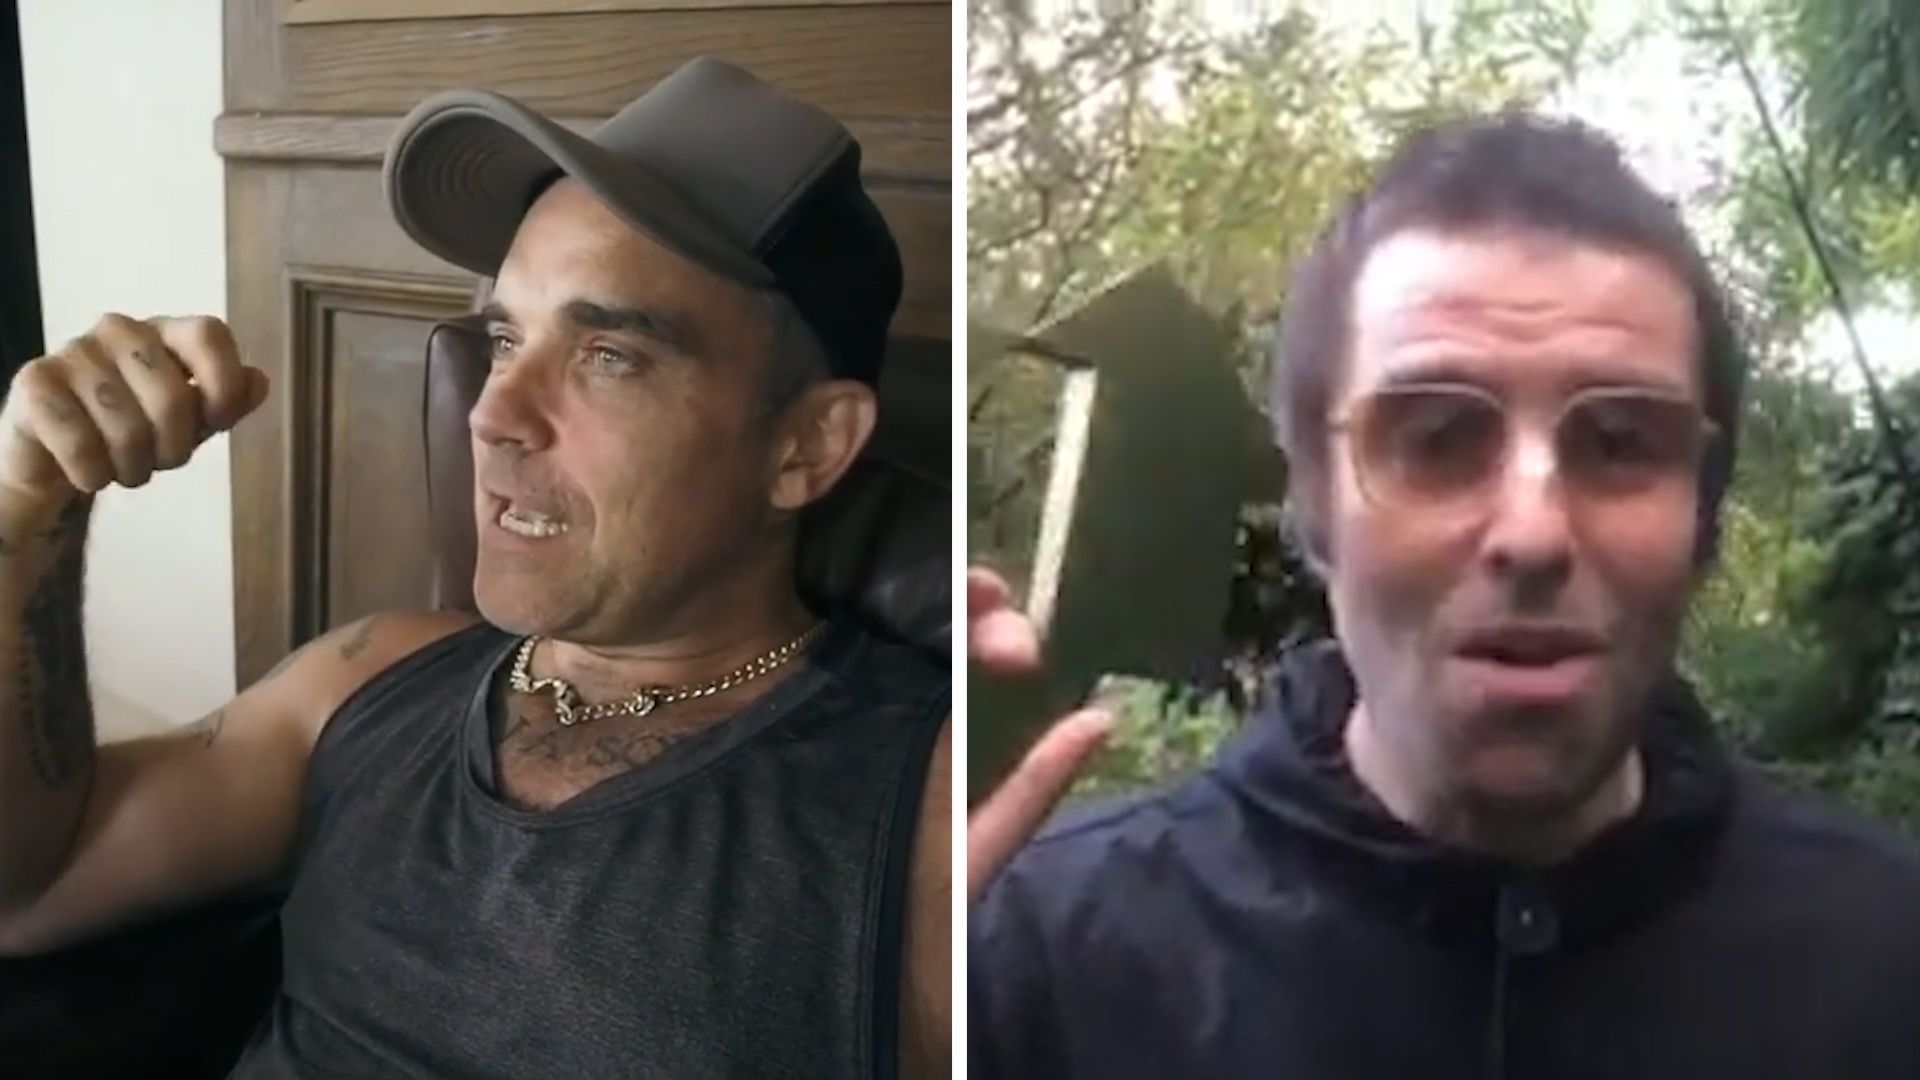 Erzfeindschaft: Robbie Williams will Boxkampf mit Liam Gallagher